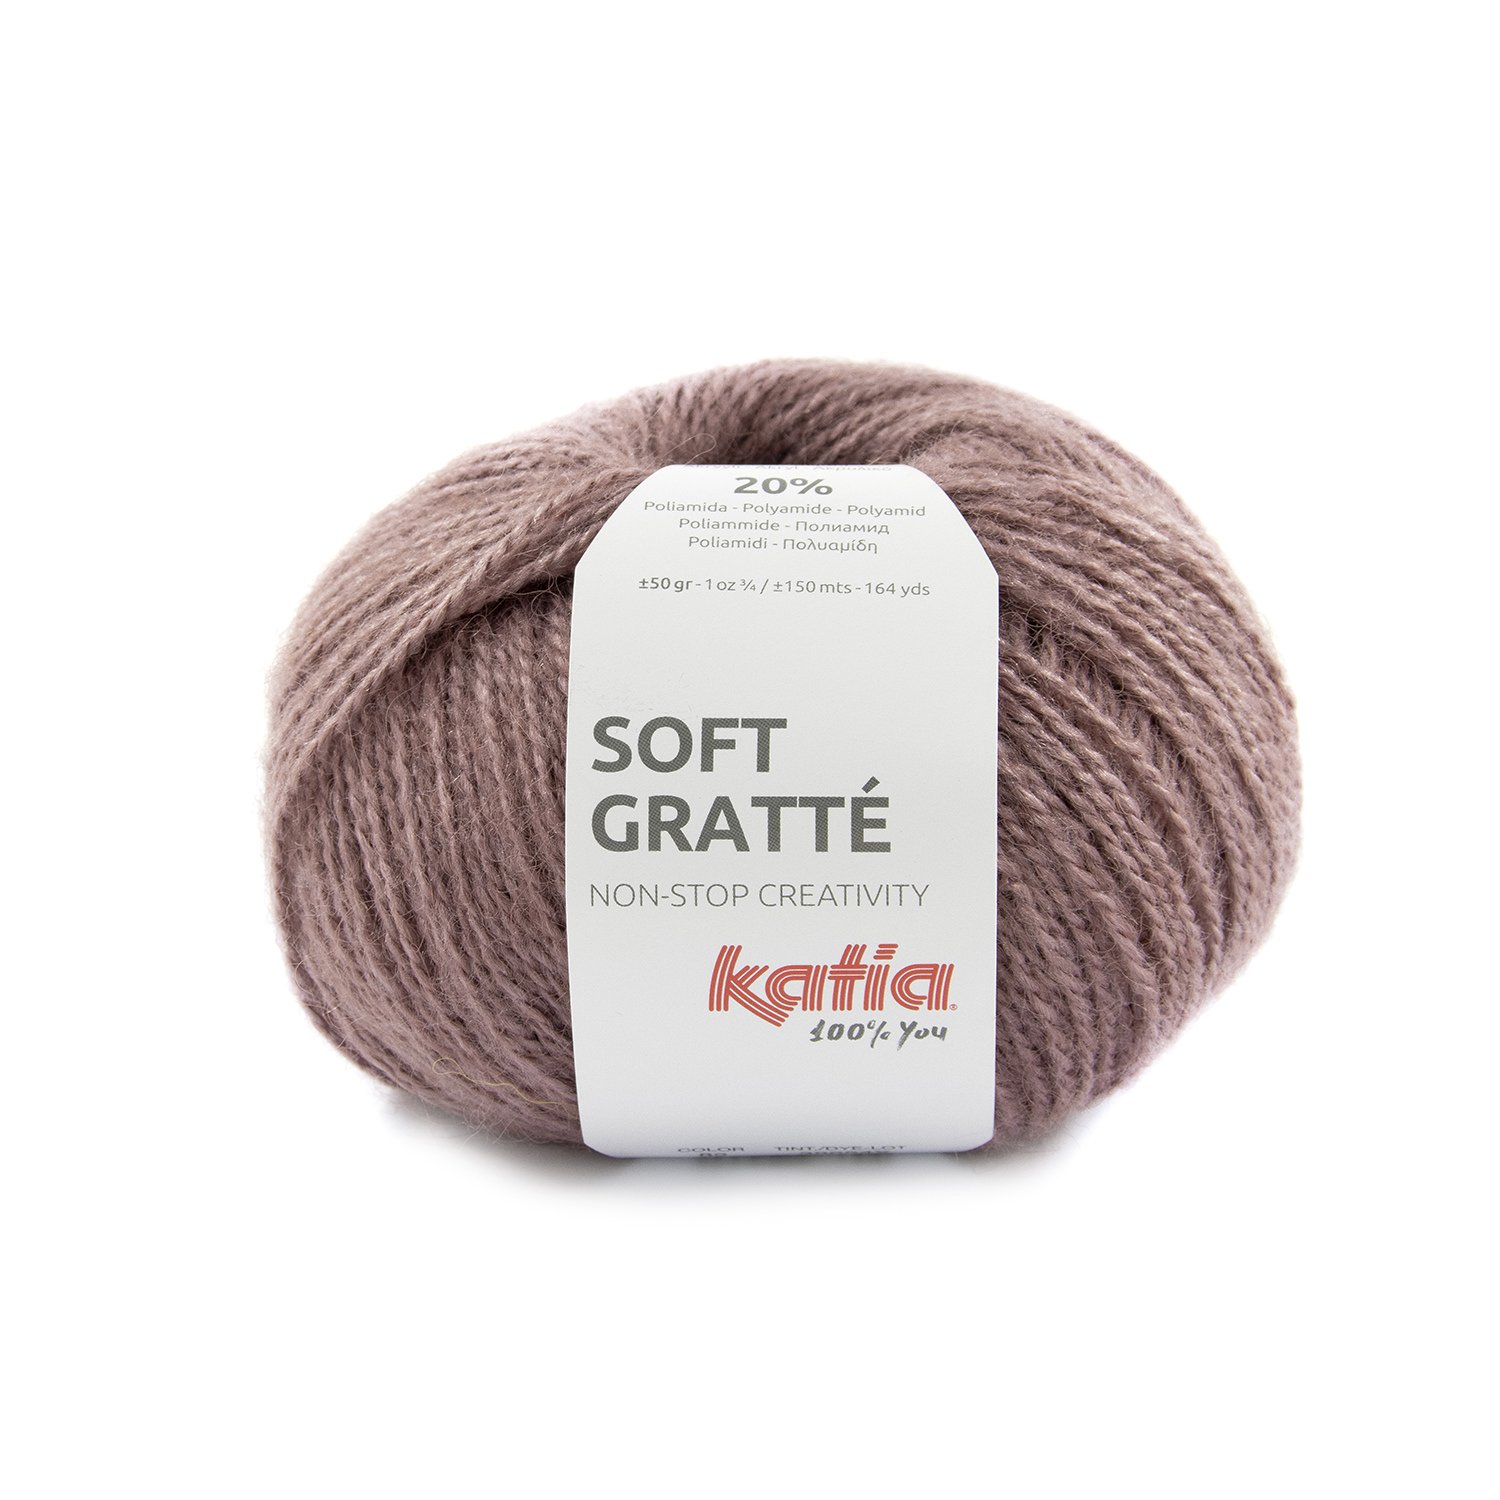 82 laine-fil-softgratte-tricoter-acrylique-polyamide-rose-fonce-automne-hiver-katia-82-fhd